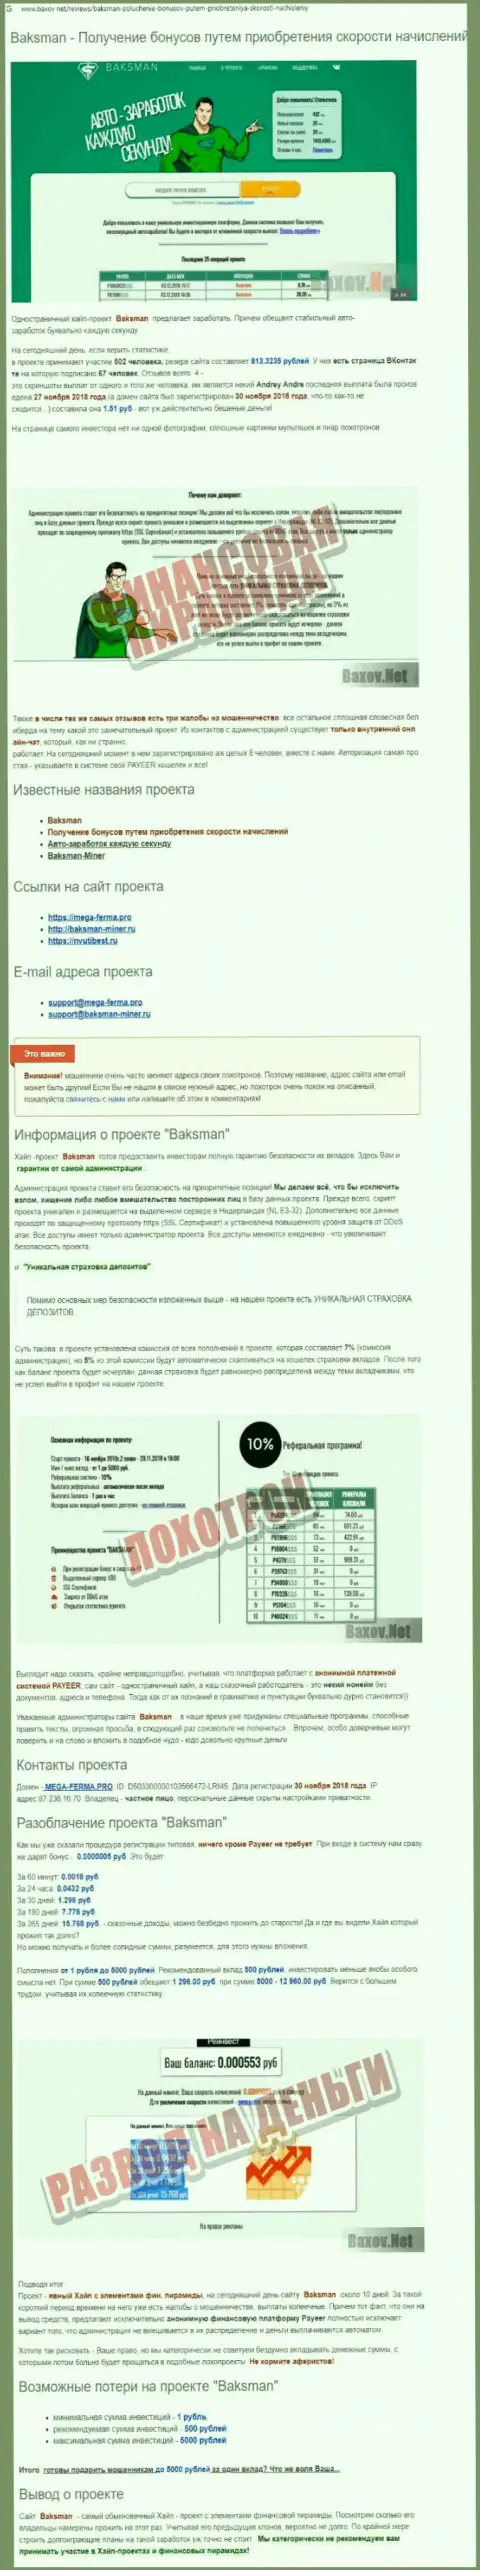 Предложения взаимодействия от BaksMan Org, вся правдивая информация об указанной компании (обзор мошеннических комбинаций)